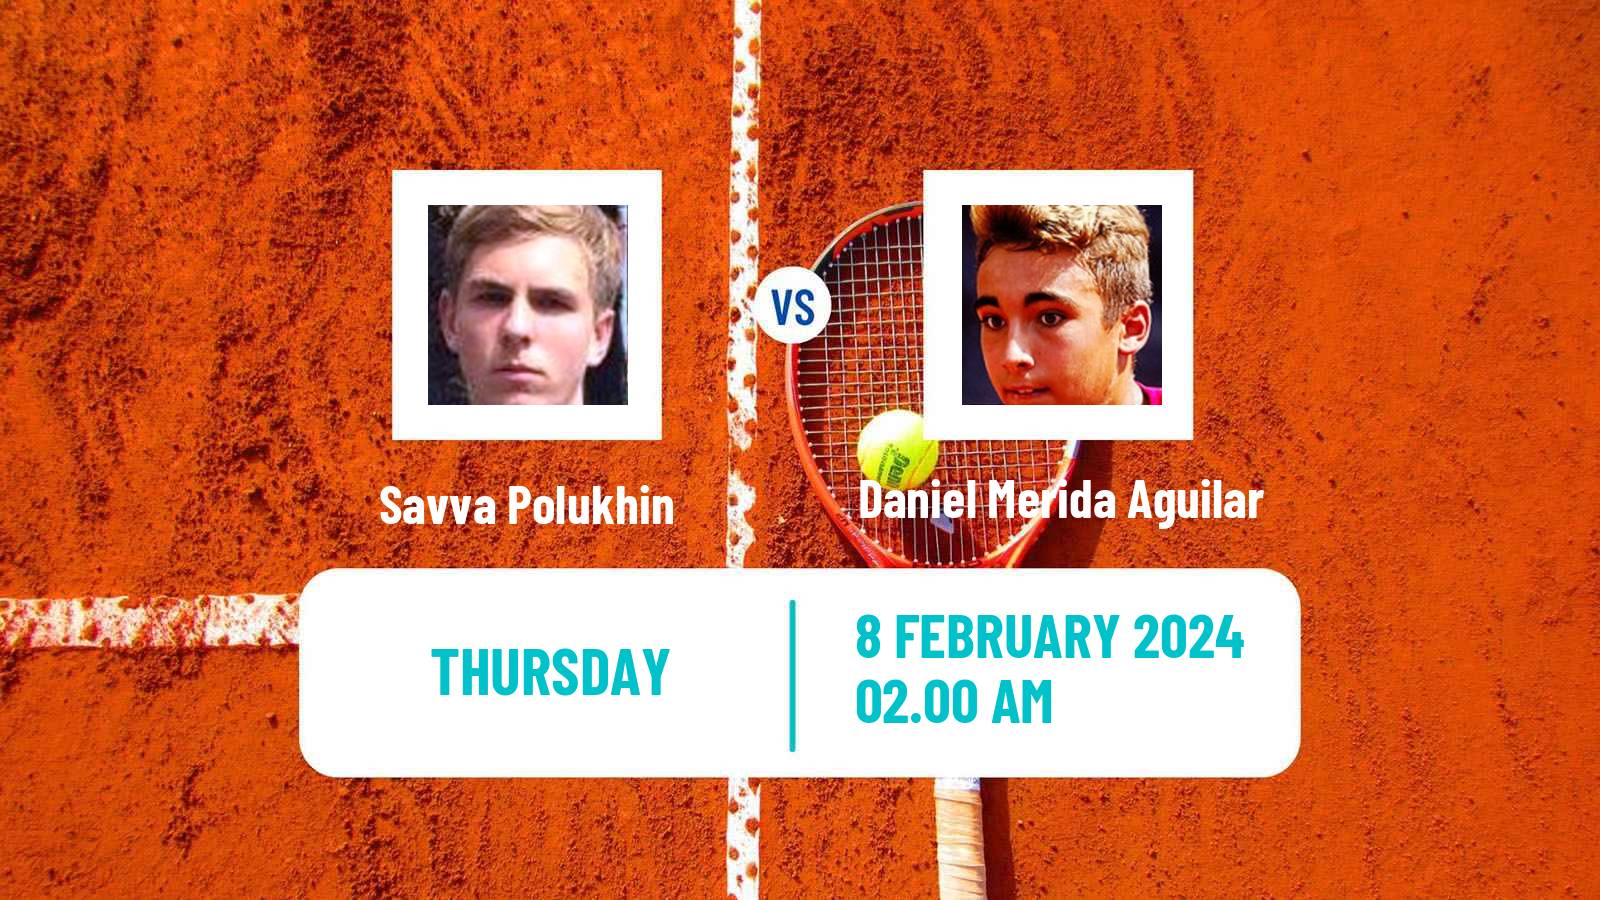 Tennis ITF M25 Antalya 2 Men Savva Polukhin - Daniel Merida Aguilar